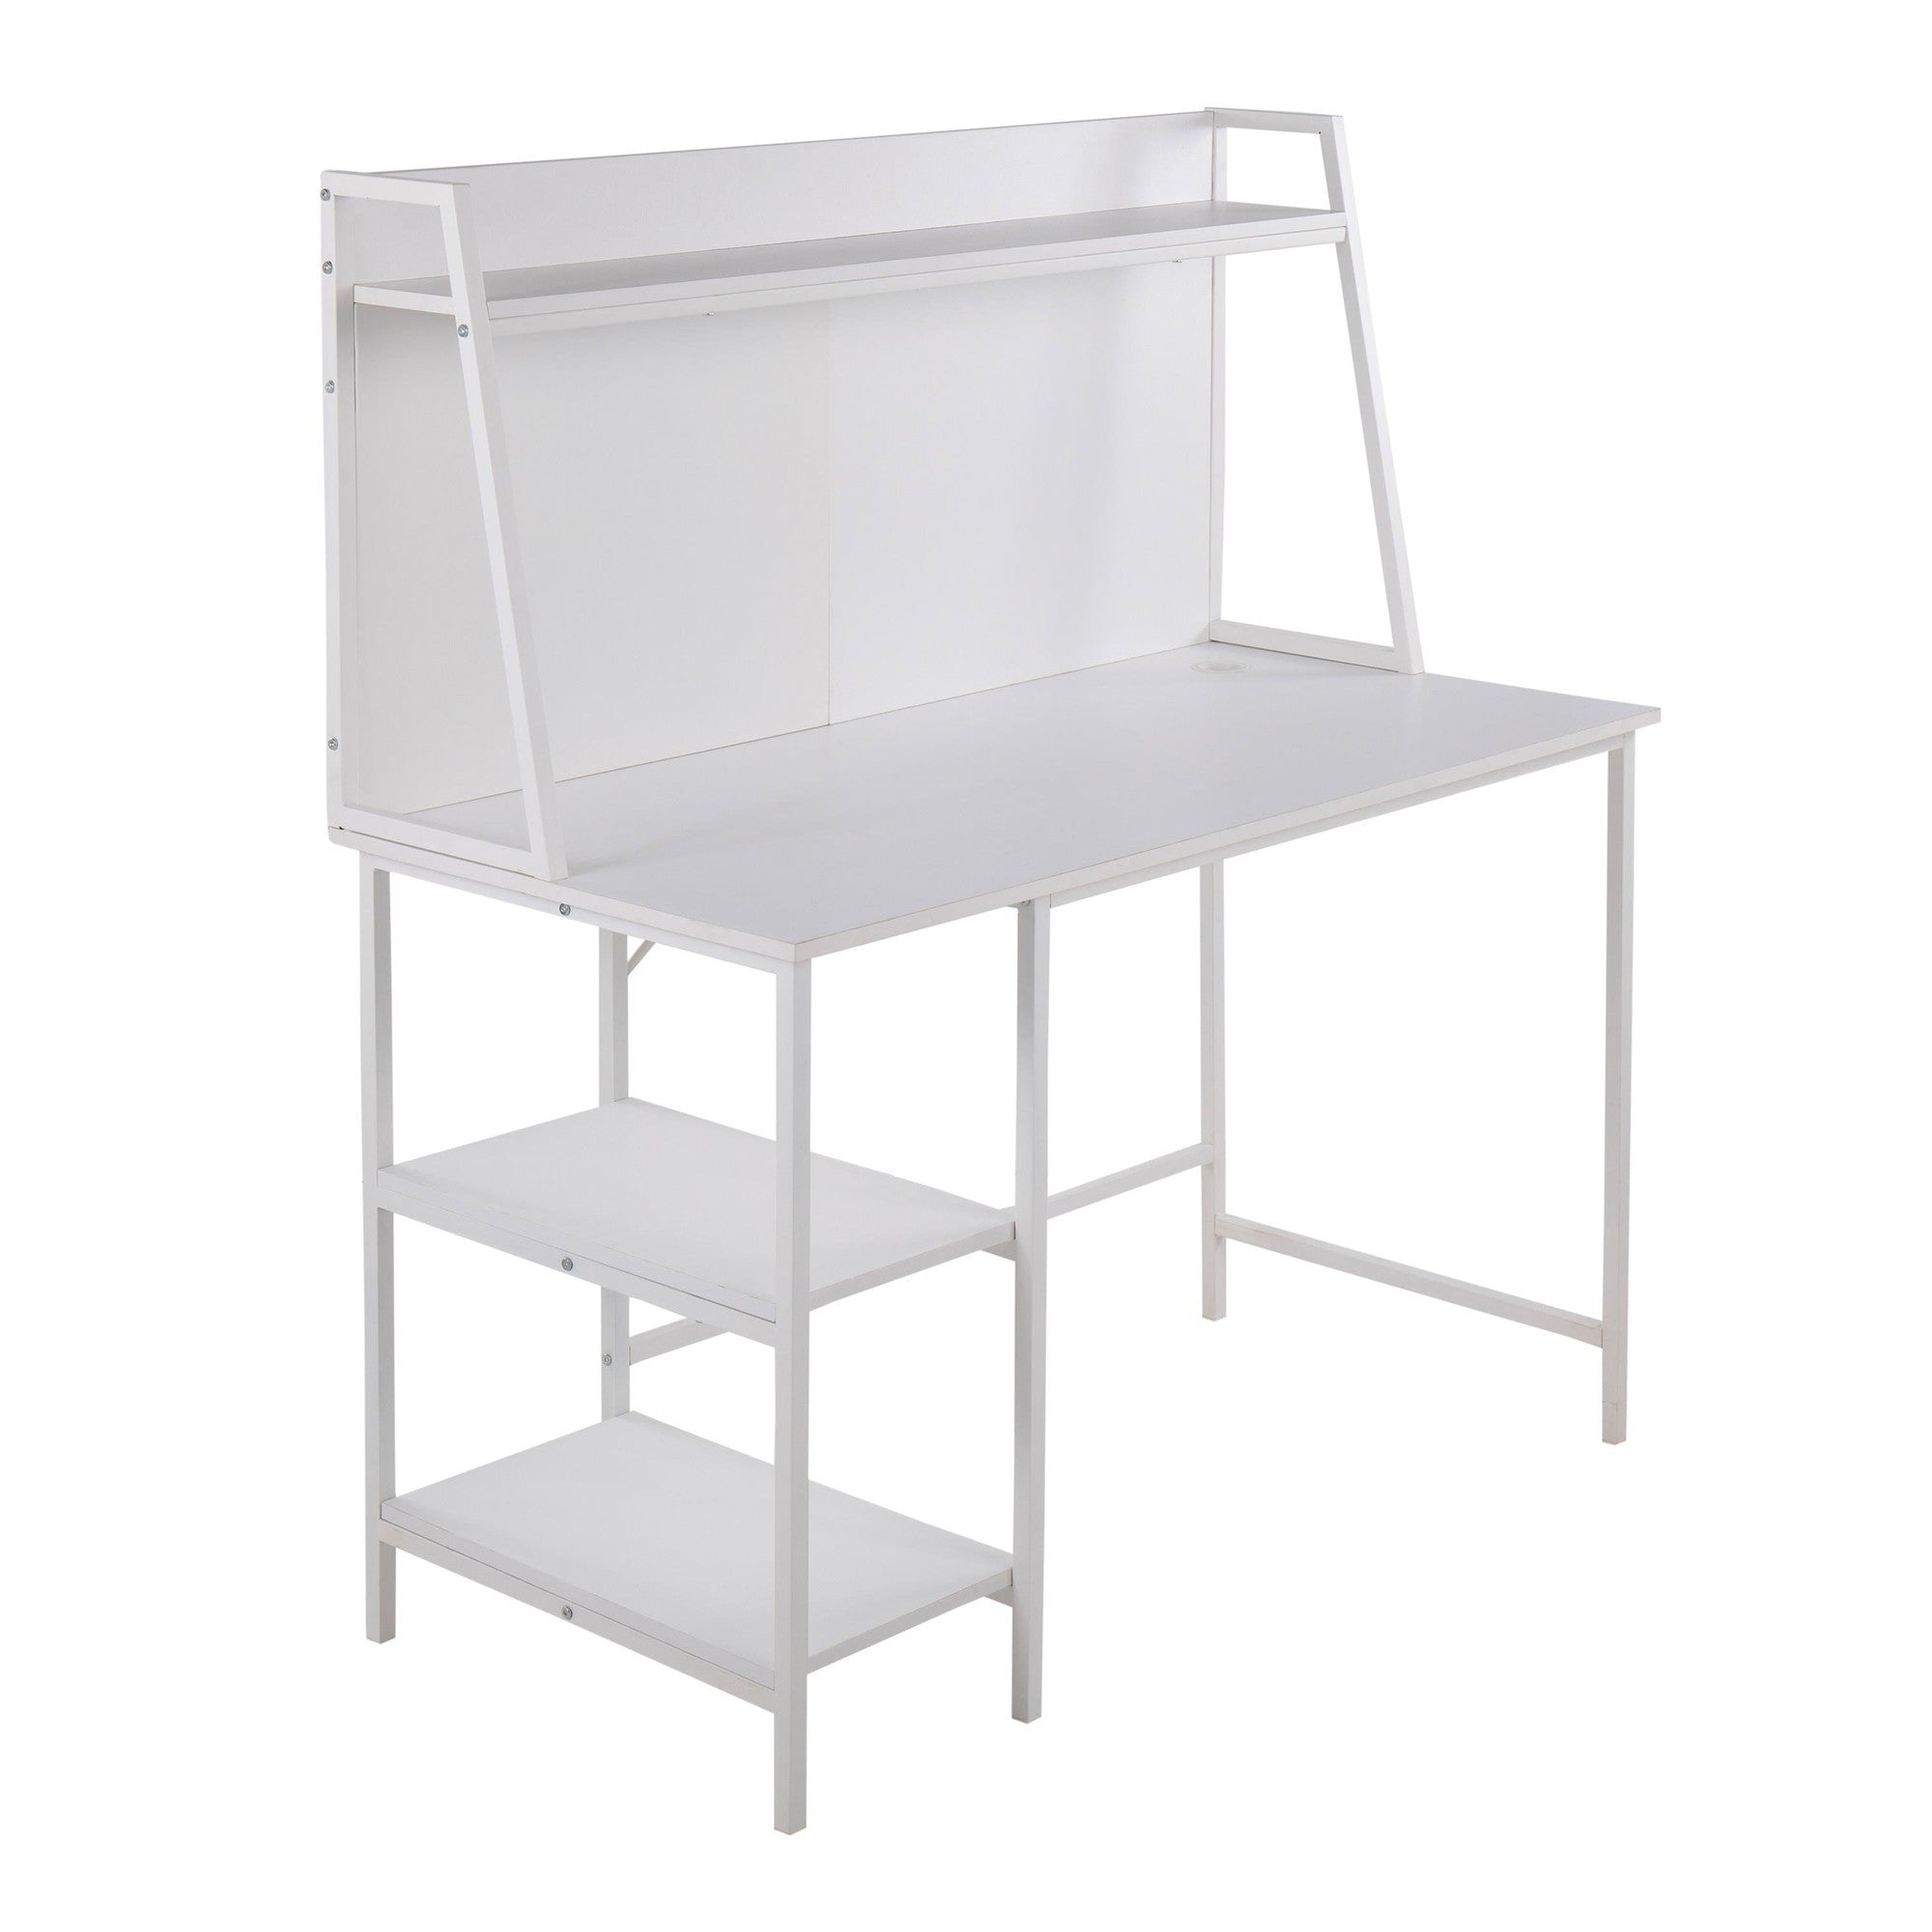 Geo Shelf Contemporary Desk in White Steel and White white-mdf